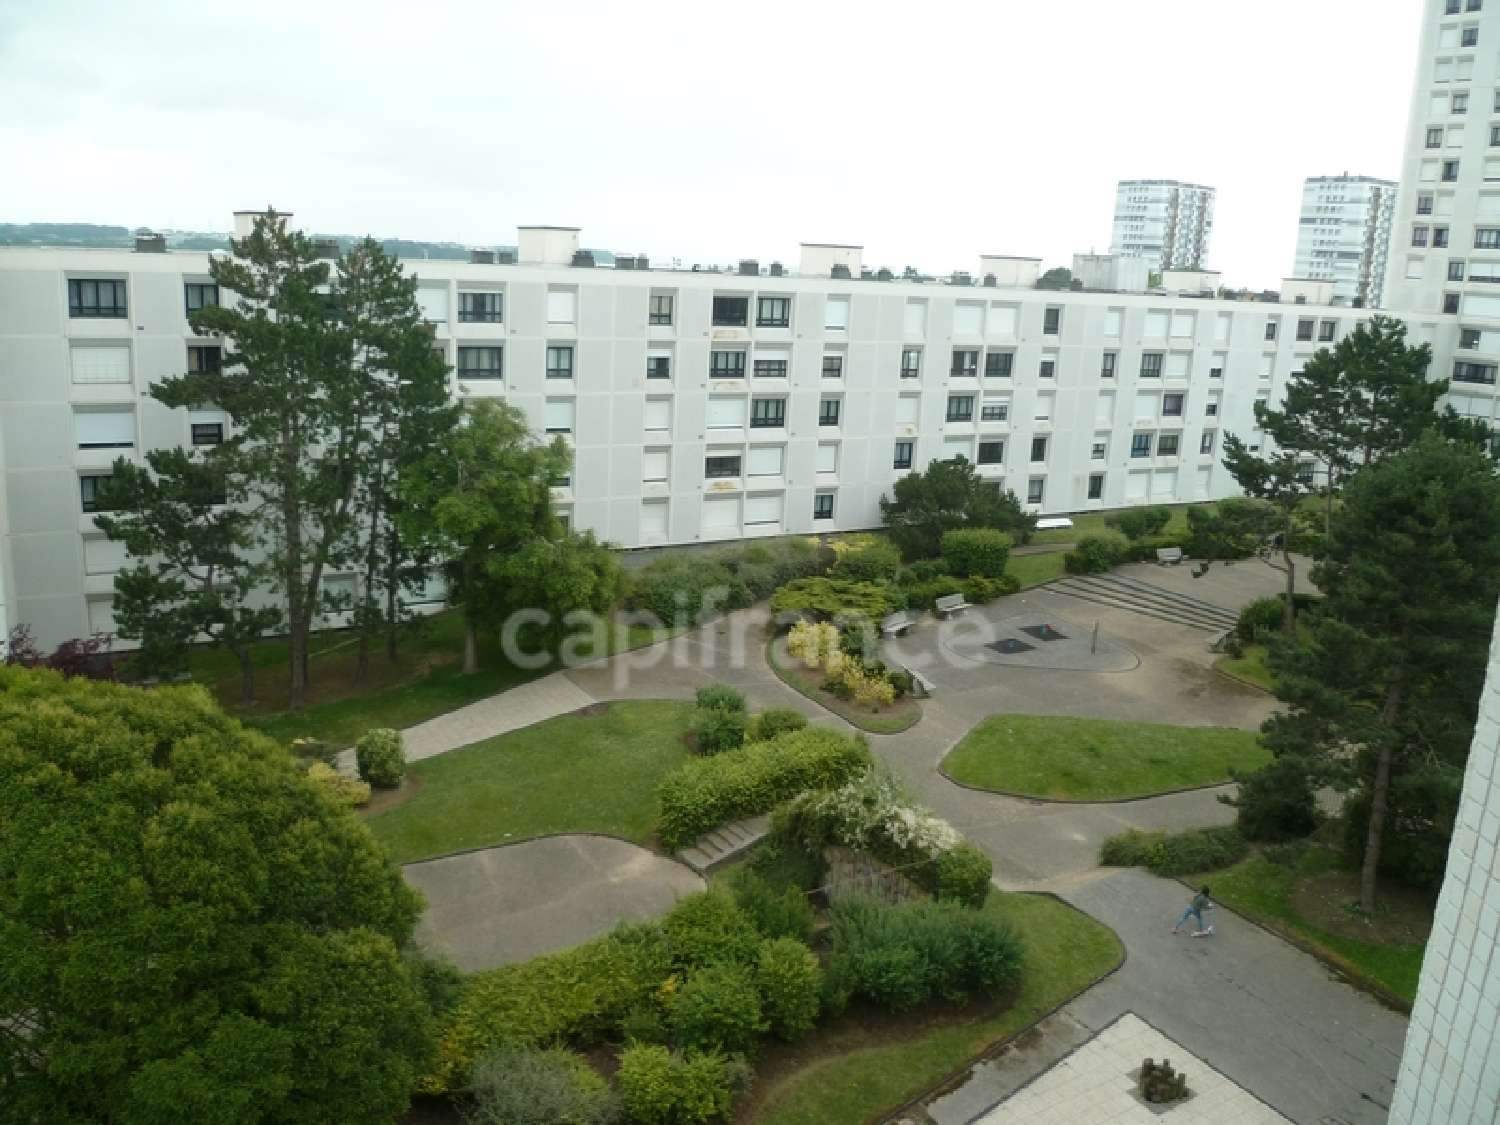 Le Havre 76610 Seine-Maritime Wohnung/ Apartment Bild 6849230